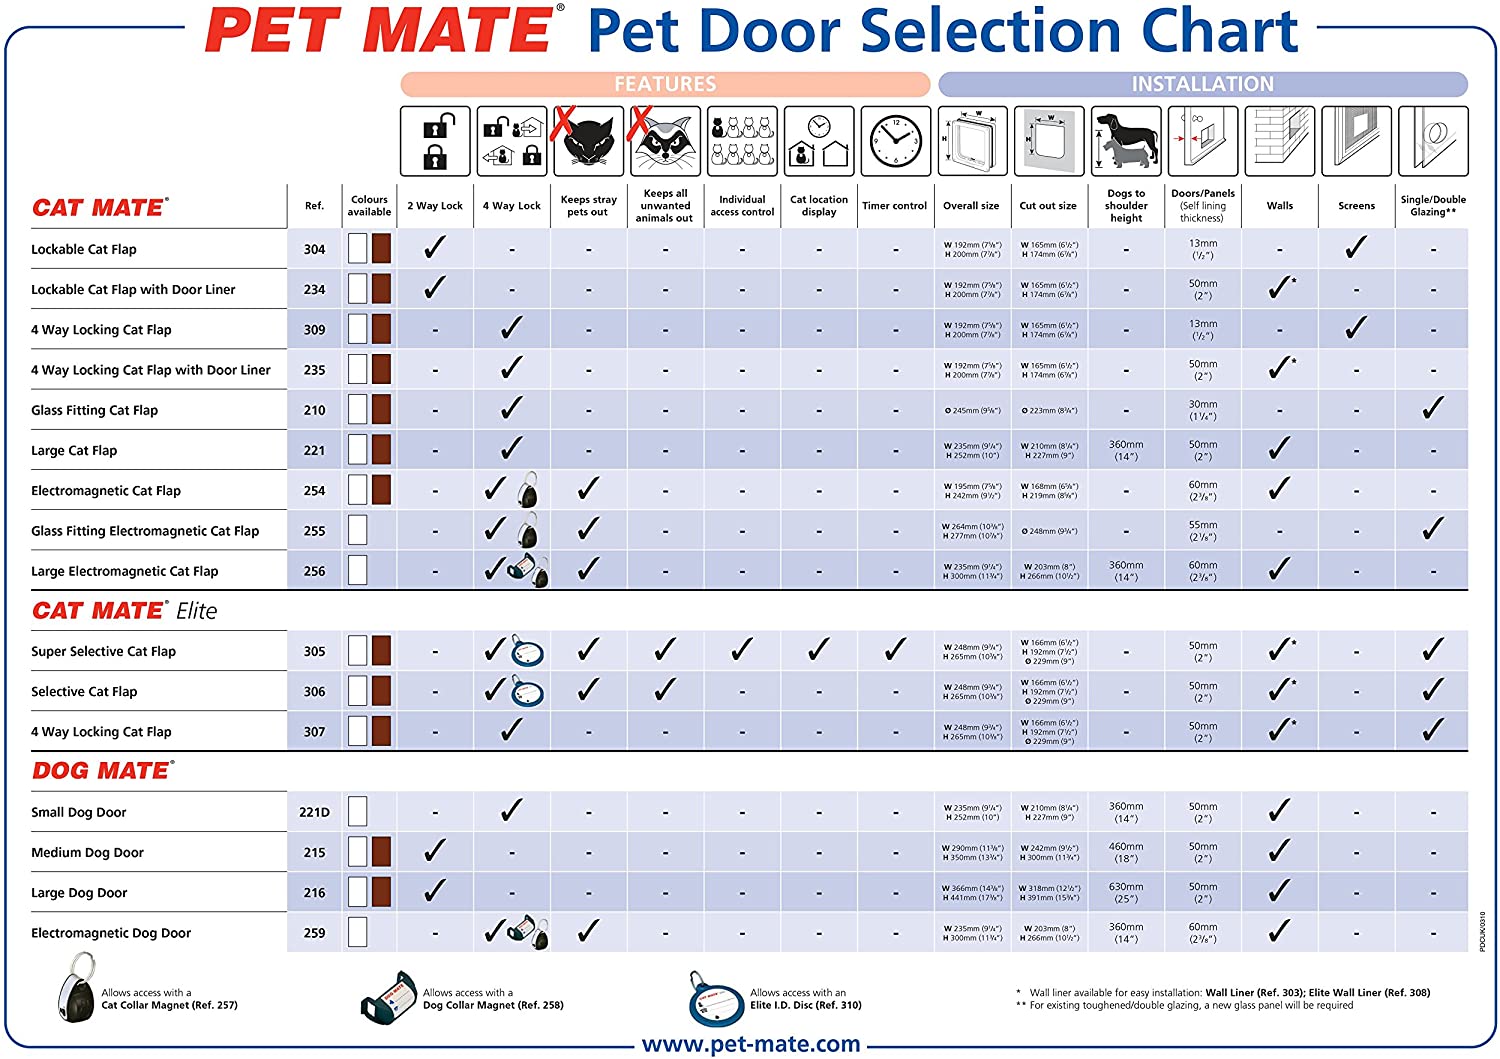  Puerta para Perro Mediano Dog Mate, 215 W, Color Blanco 